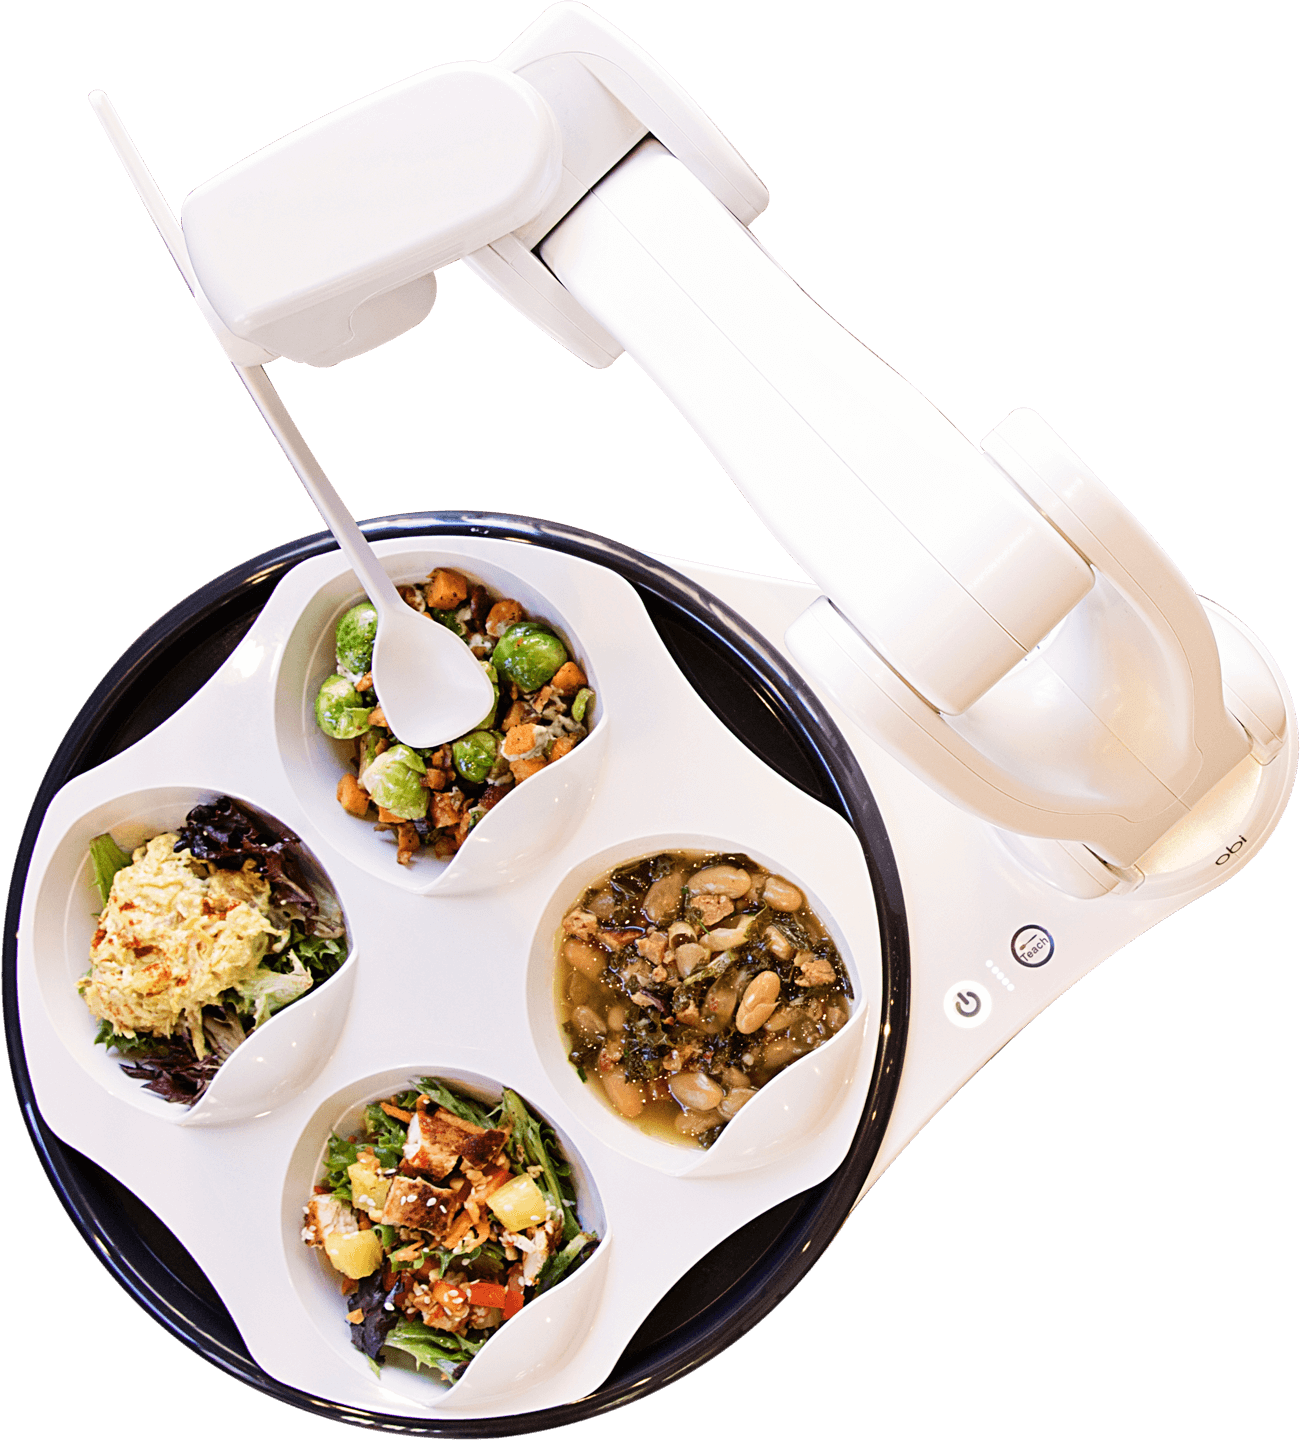 OBI Esshilfe Roboter- übernehmen Sie die Kontrolle beim essen- mobiler Essroboter-Arm komplett mit Schalen- inkl- Akku- für zu Hause oder im Restaurant unter Esshilfen und Trinkhilfen